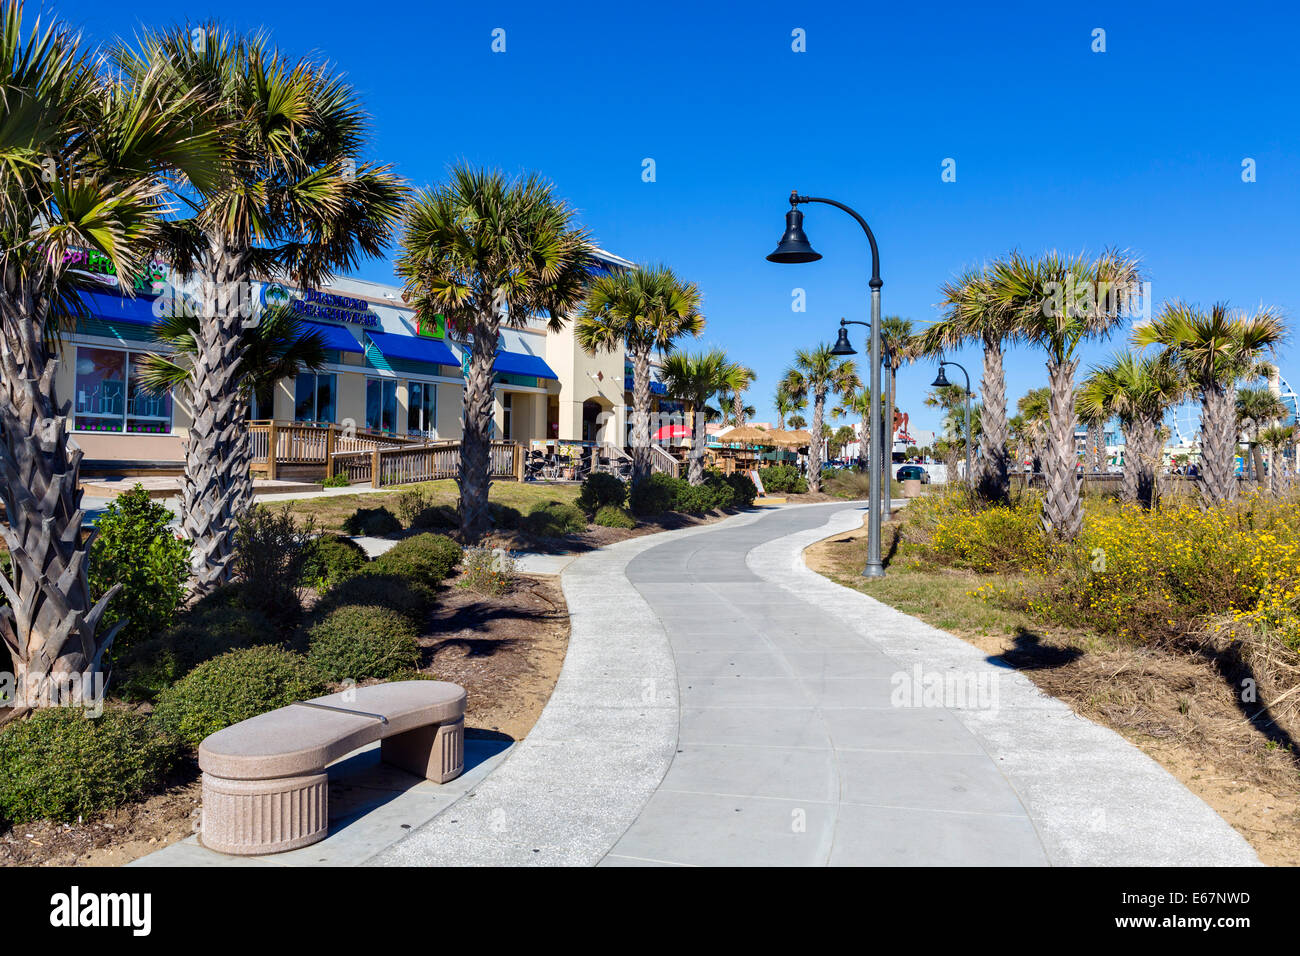 Myrtle Beach Boardwalk et promenade sur un quartier calme en dehors de la saison d'automne, jour, Myrtle Beach, Caroline du Sud, USA Banque D'Images